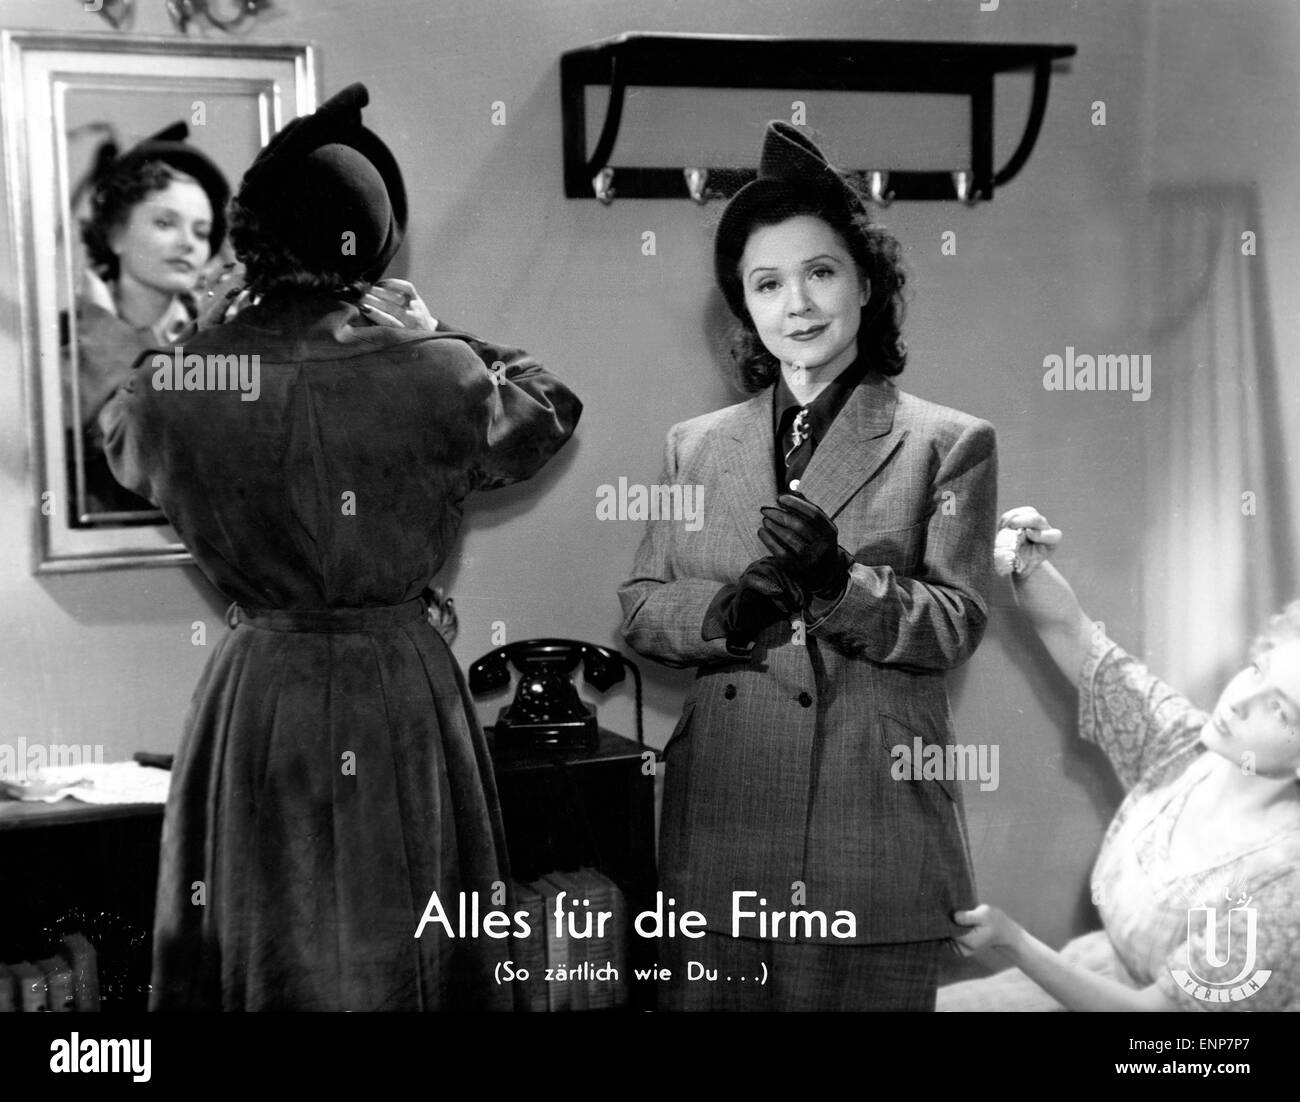 Alles für die Firma (in modo zärtlich wie Du...); Deutschland 1950, Regie: Ferdinando Dörfler, Darsteller: Lucie Englisch, Ilona Lamee Foto Stock